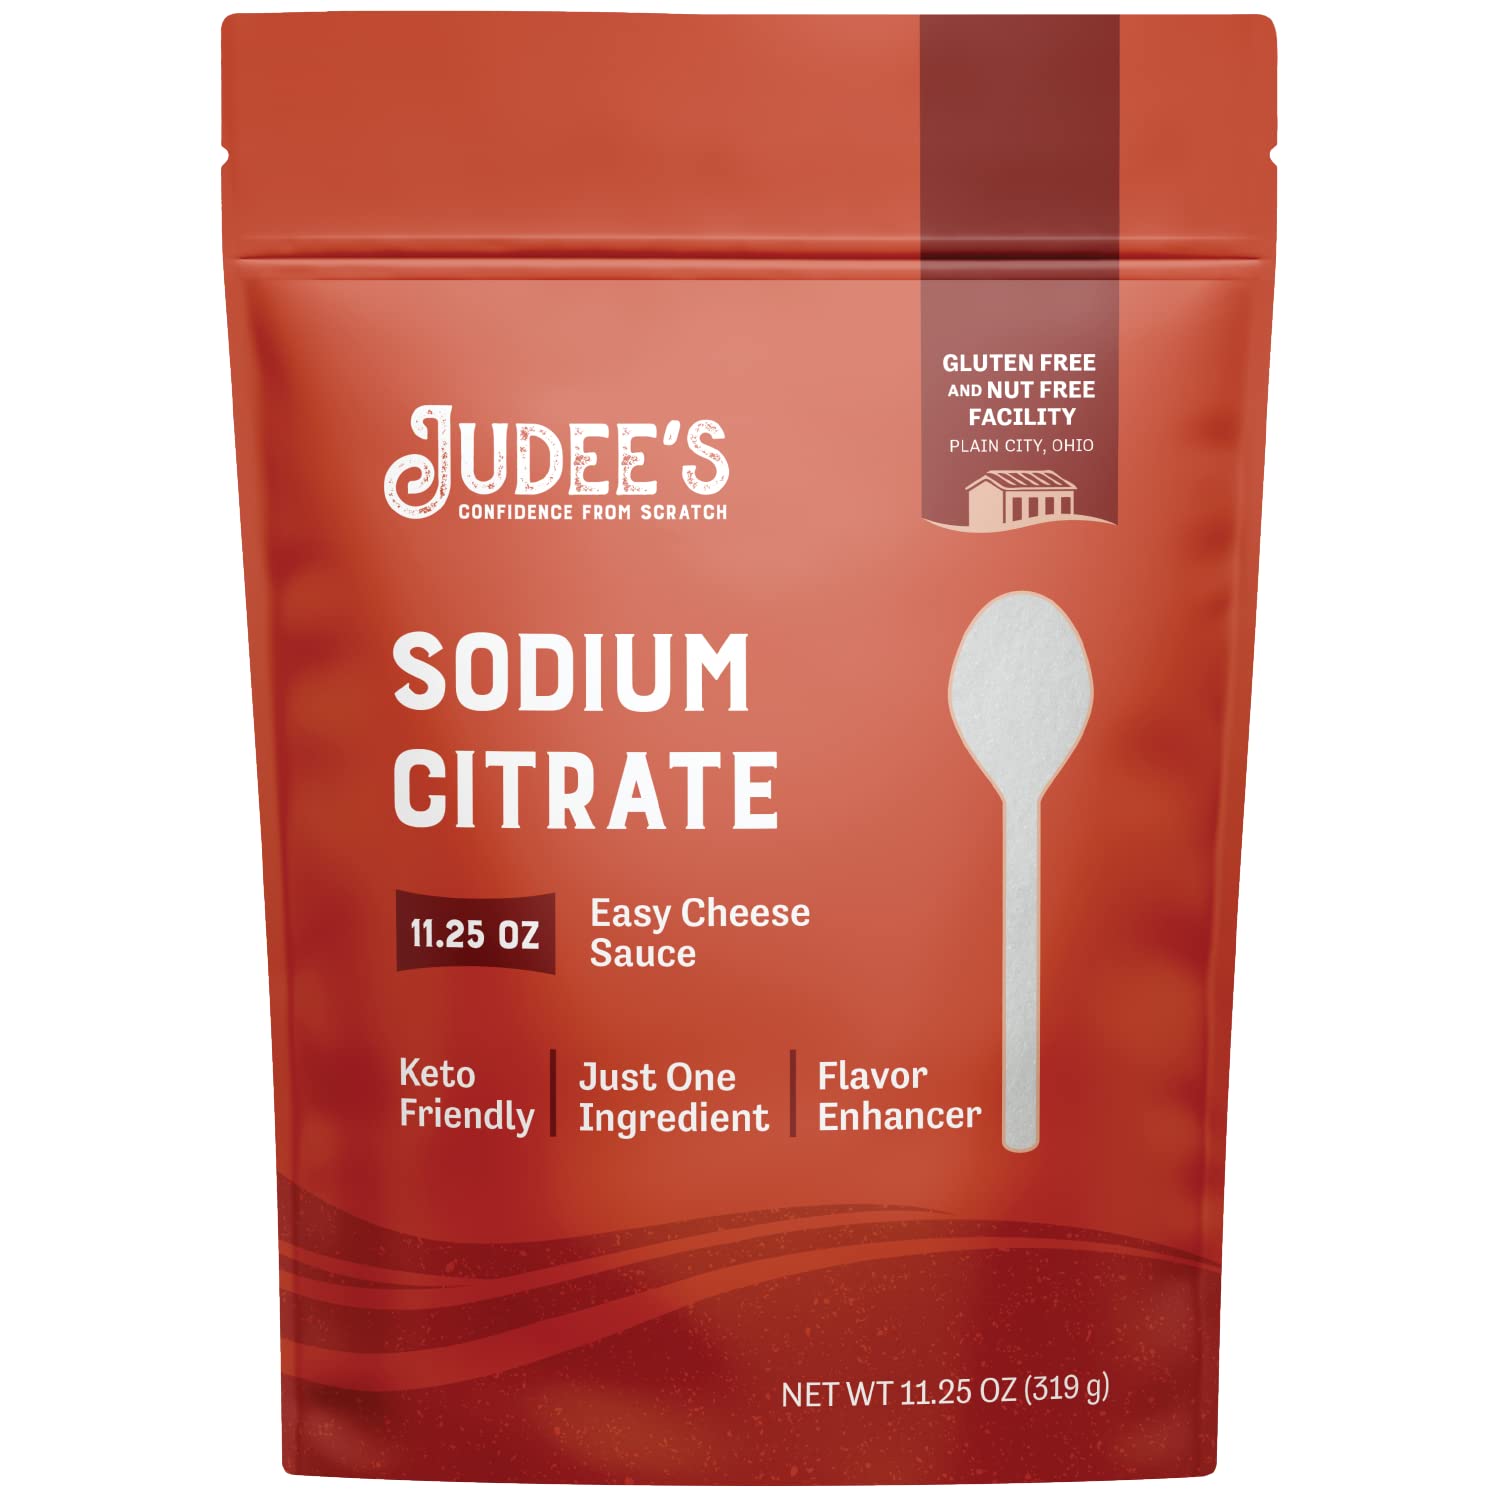  Sodium Citrate Powder 8 Ounce - Food Grade, Non-GMO